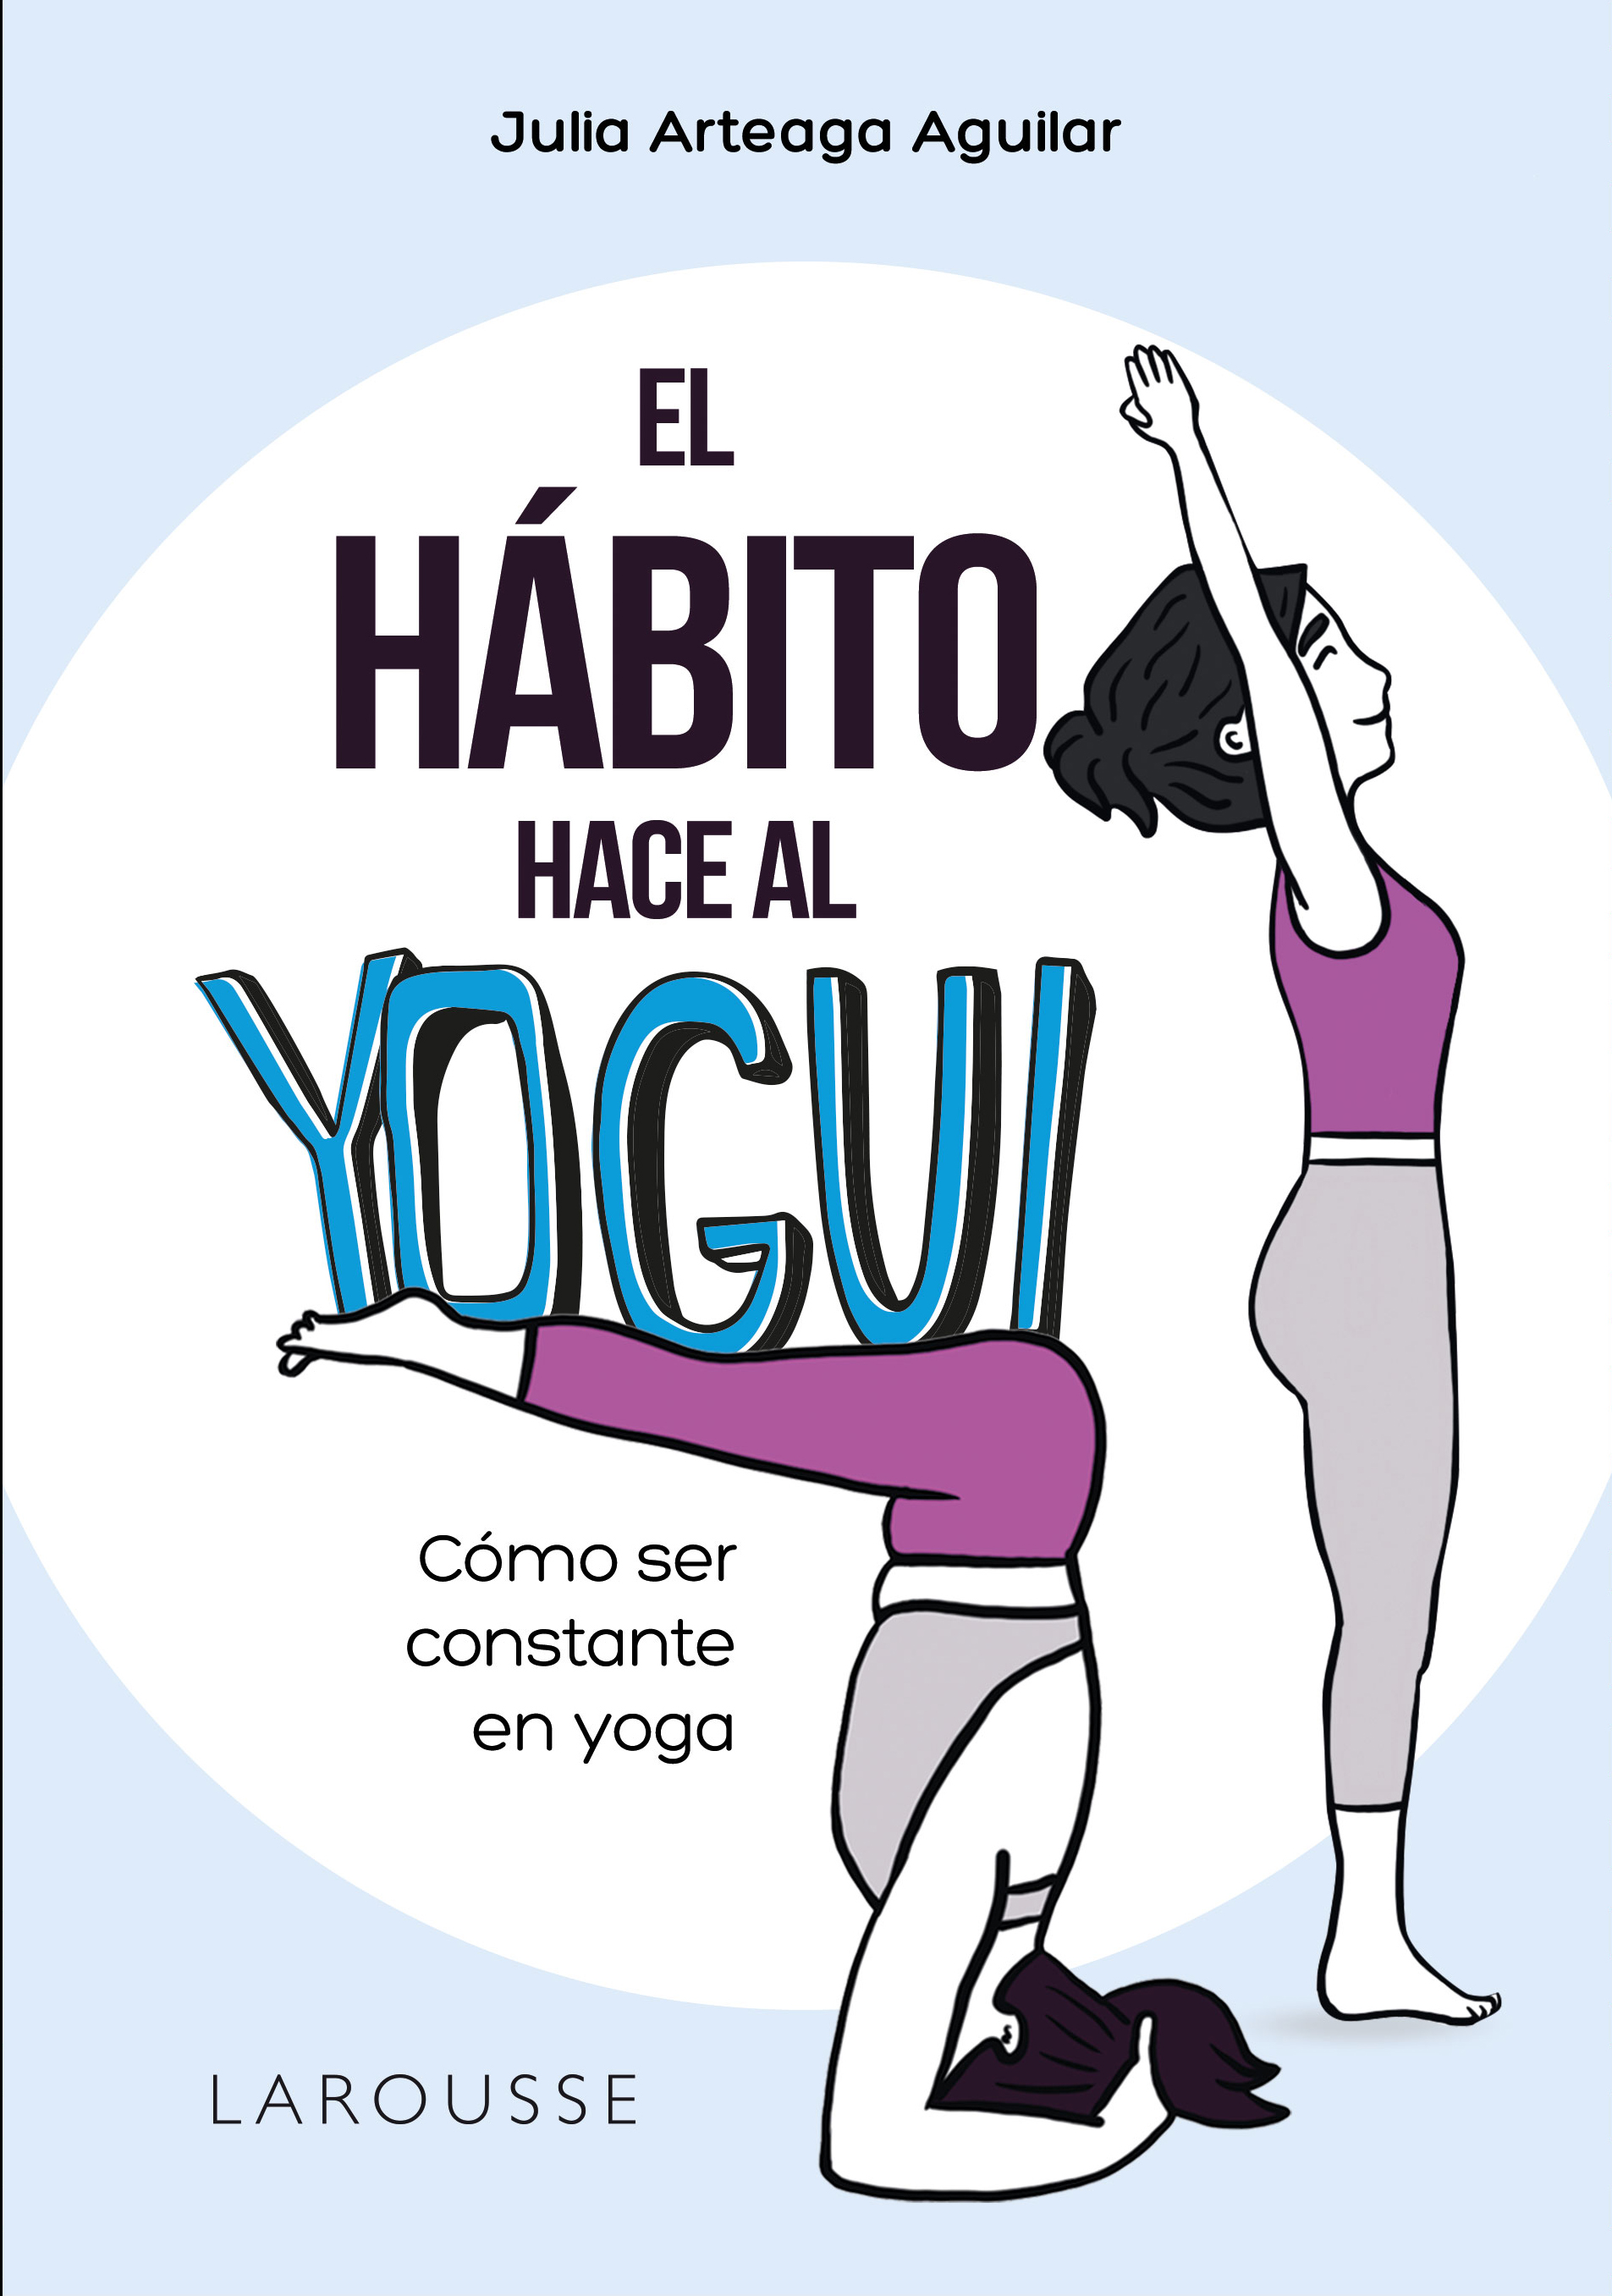 <strong>El yoga es constancia</strong>